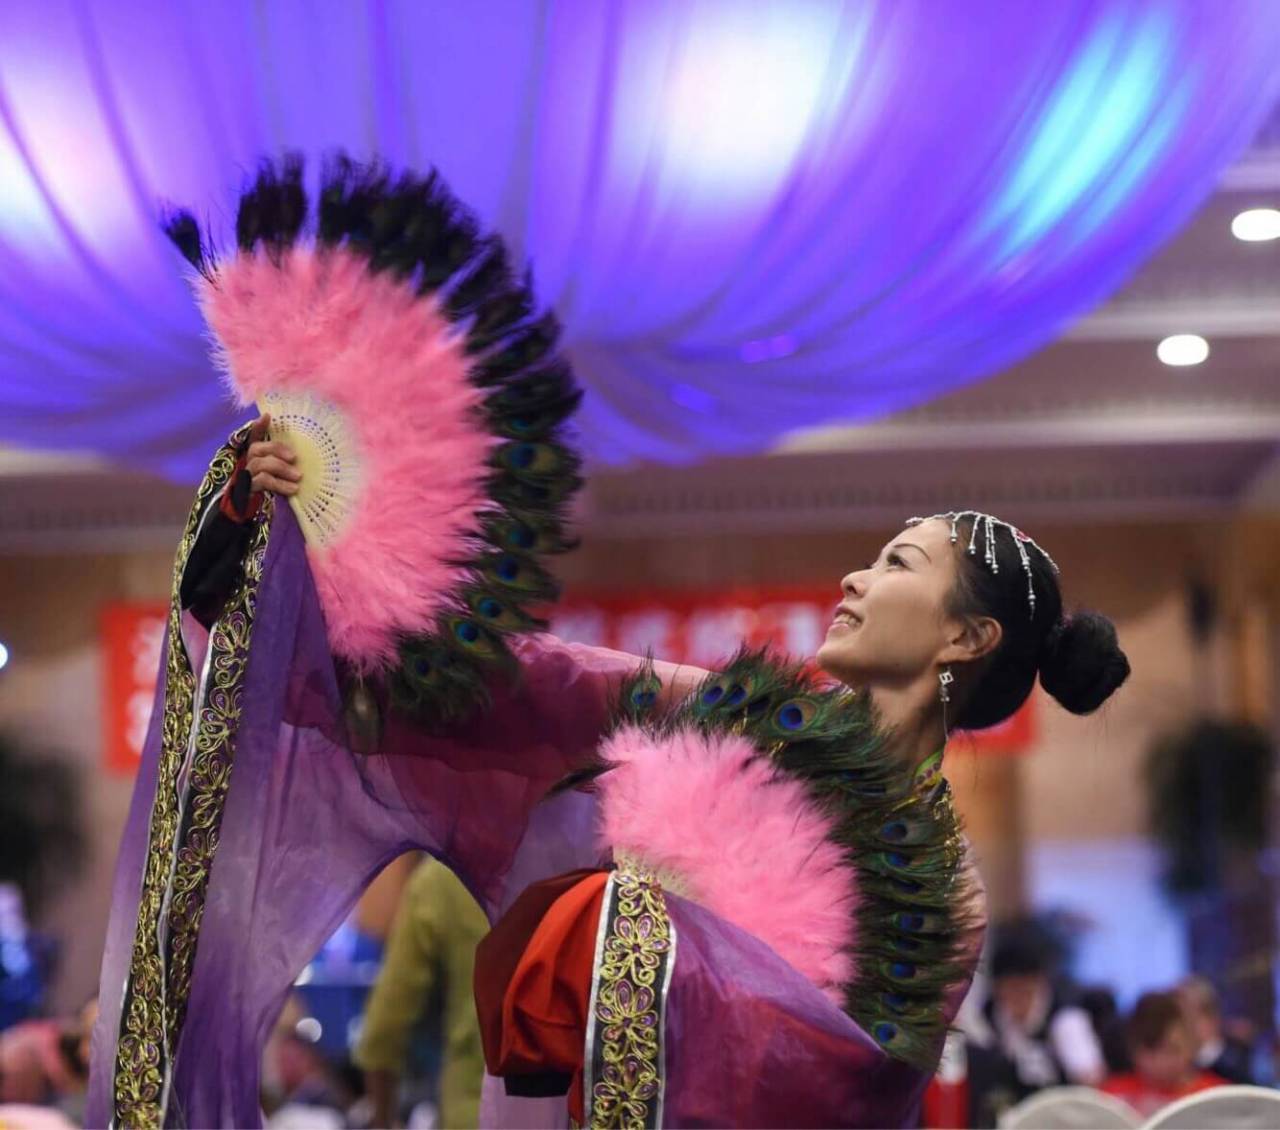 #asian#fan#dance#traditional#purple#pink#peacock